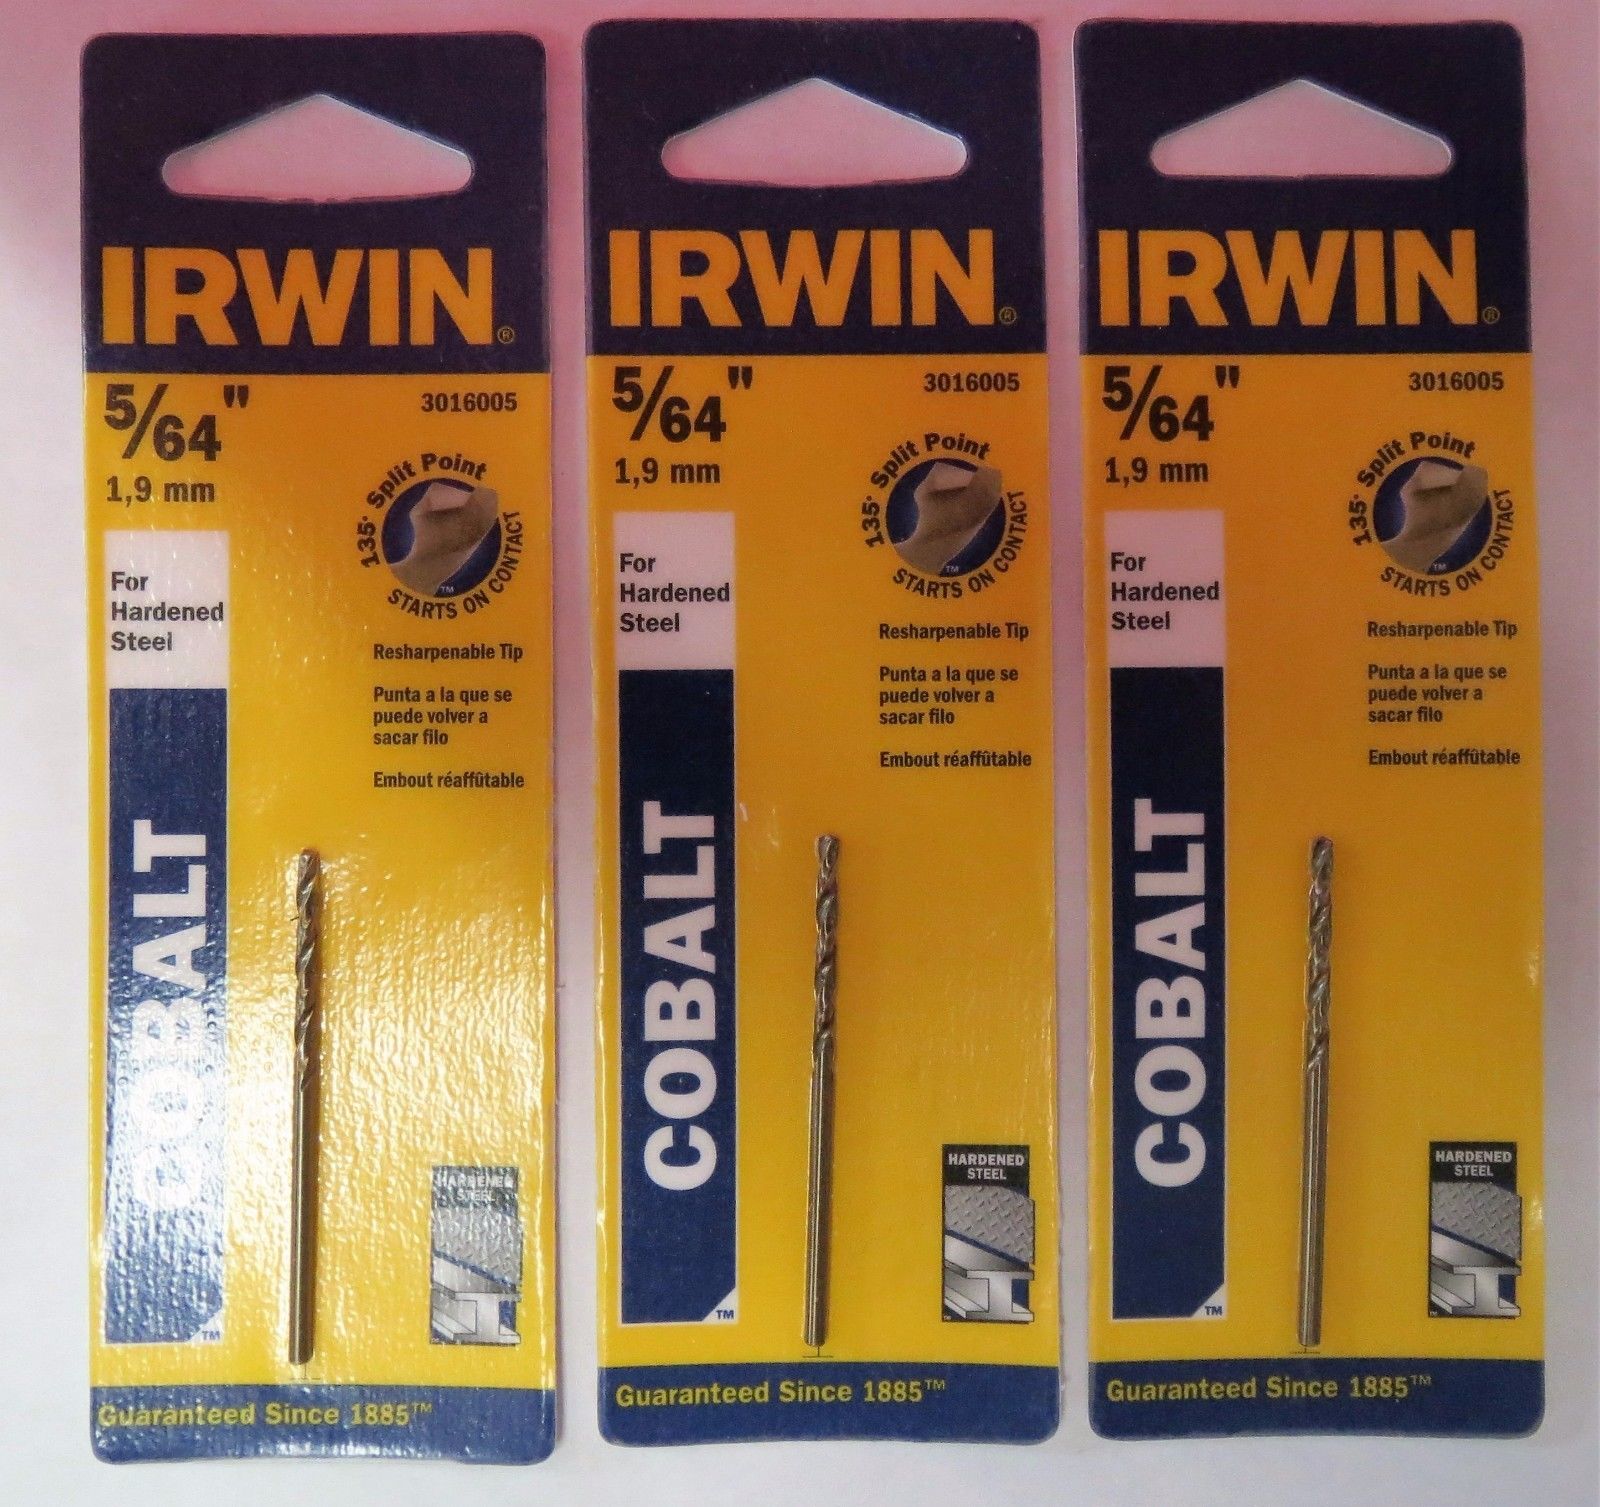 Irwin 3016005 5/64" Cobalt HSS Split Point Drill Bit for Hardened Steel 3PKS